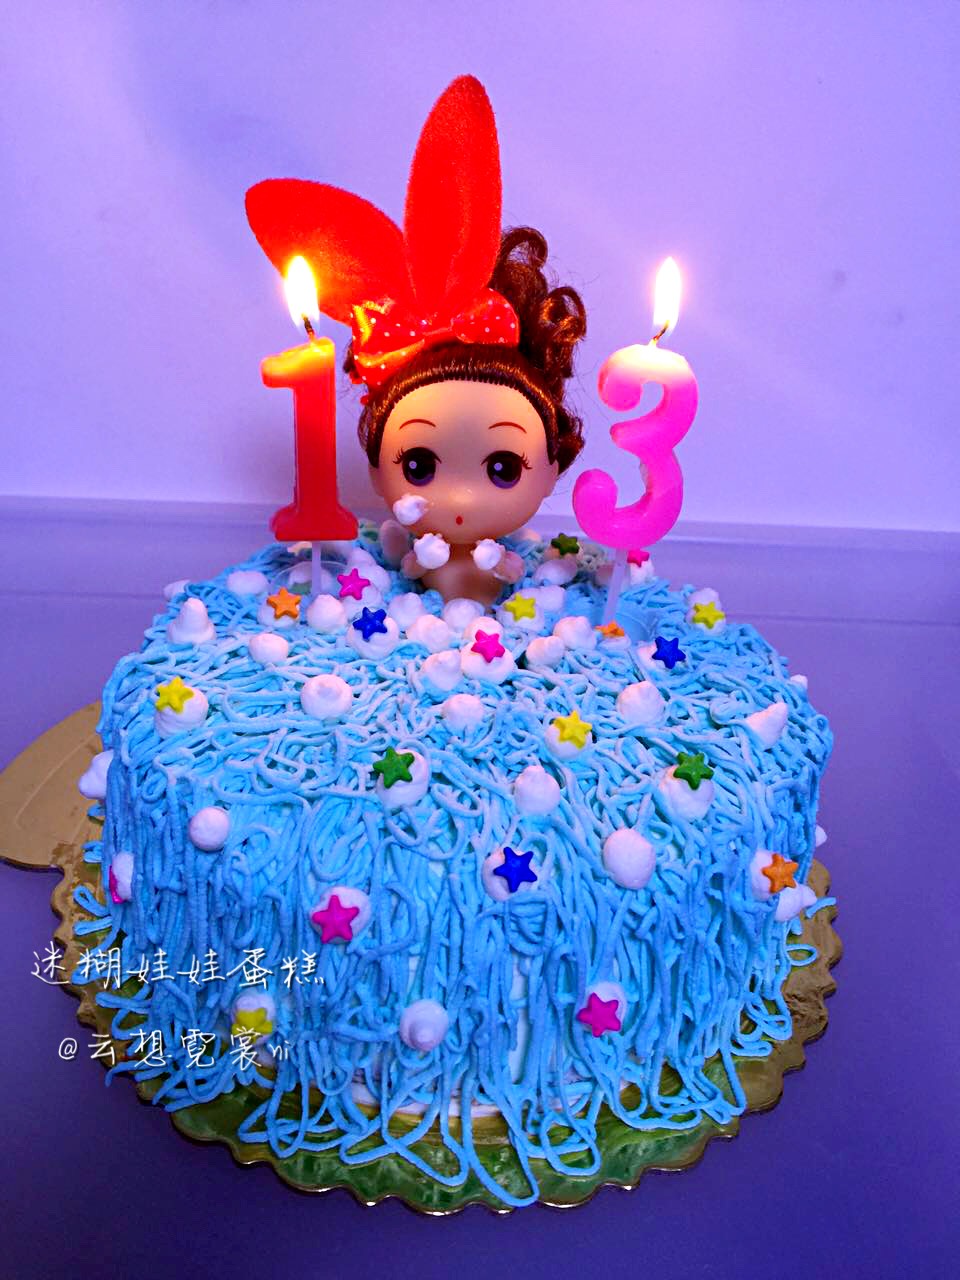 祝女儿生日快乐蛋糕图片